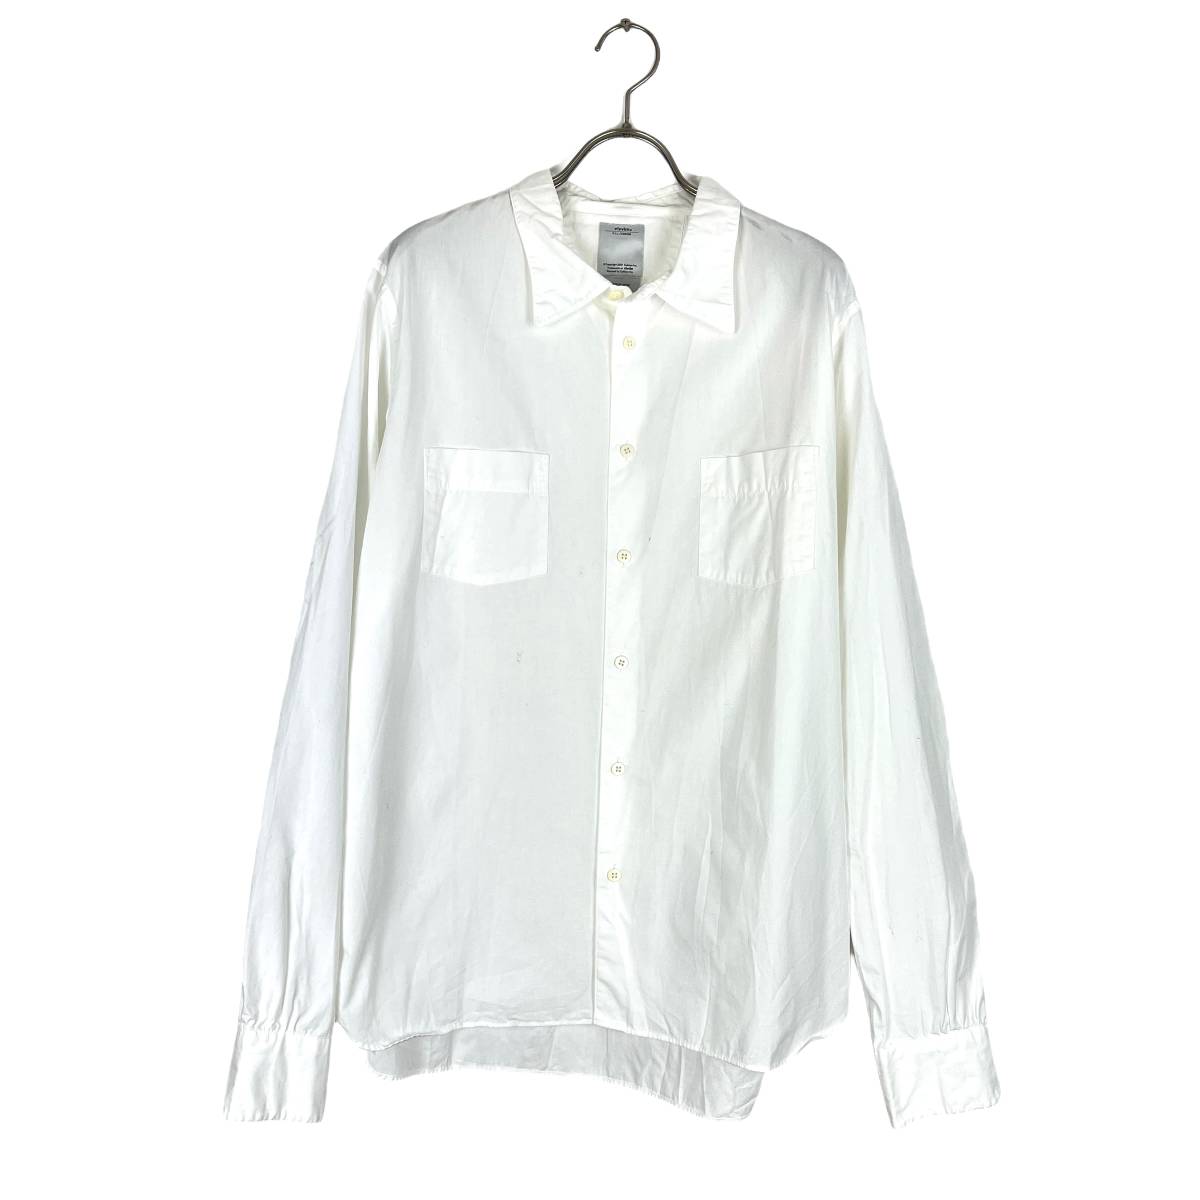 VISVIM(ビズビム) GEKKO DRESS CHAMBRAY L/S 16AW (white)